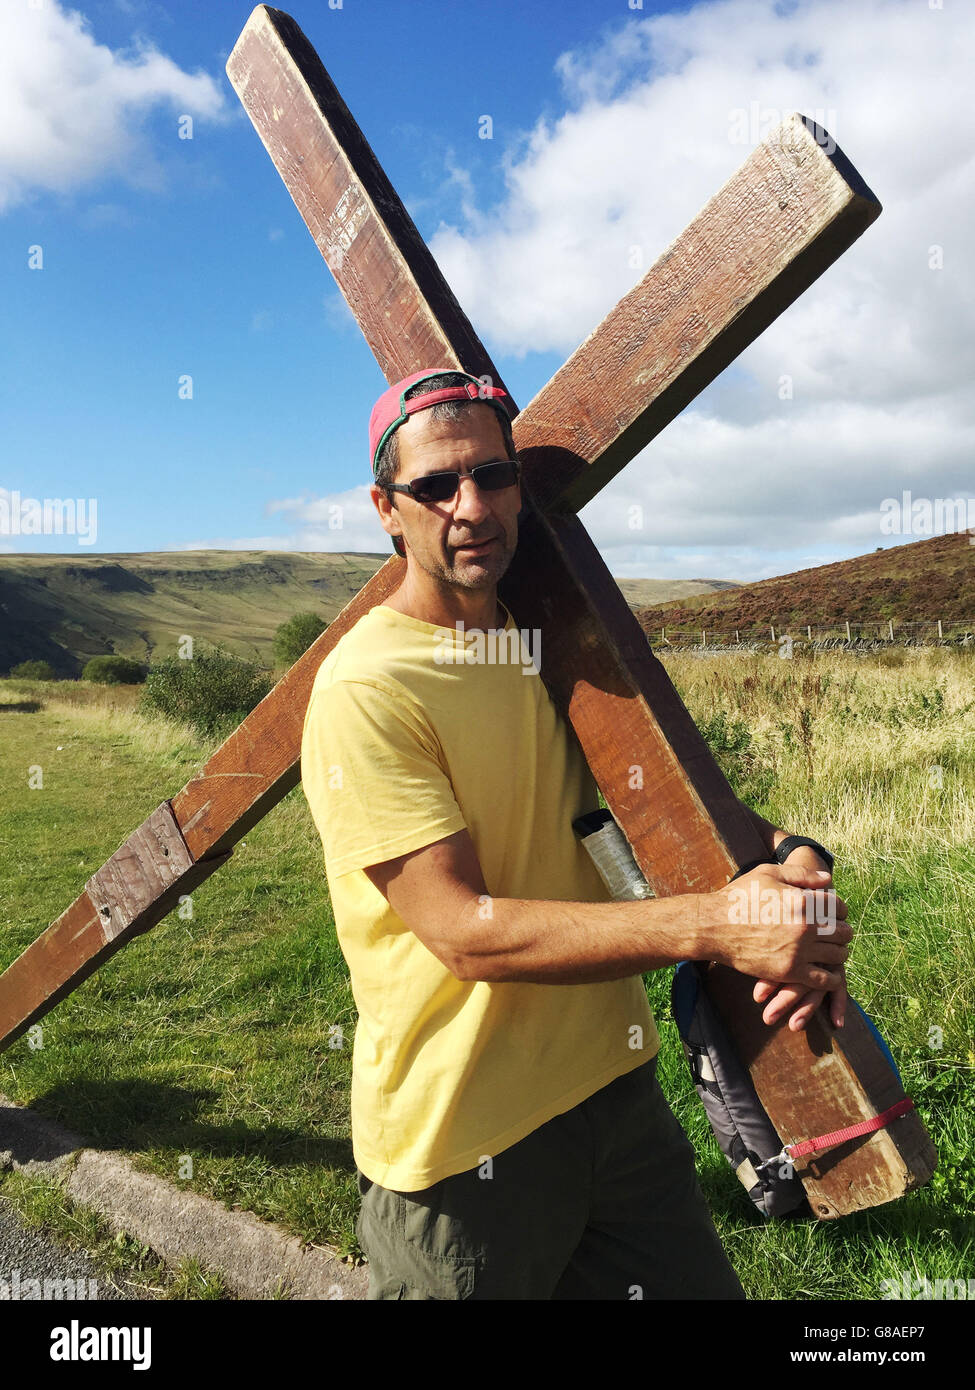 Der reformierte Drogensüchtige und wiedergeborene Christian Clive Cornish bei Story Arms in Brecon, als er mit einem riesigen 12-Fuß-Kreuz auf dem Rücken von Nord- nach Südwales ging, um das Bewusstsein für die weniger Glücklichen zu schärfen. Stockfoto